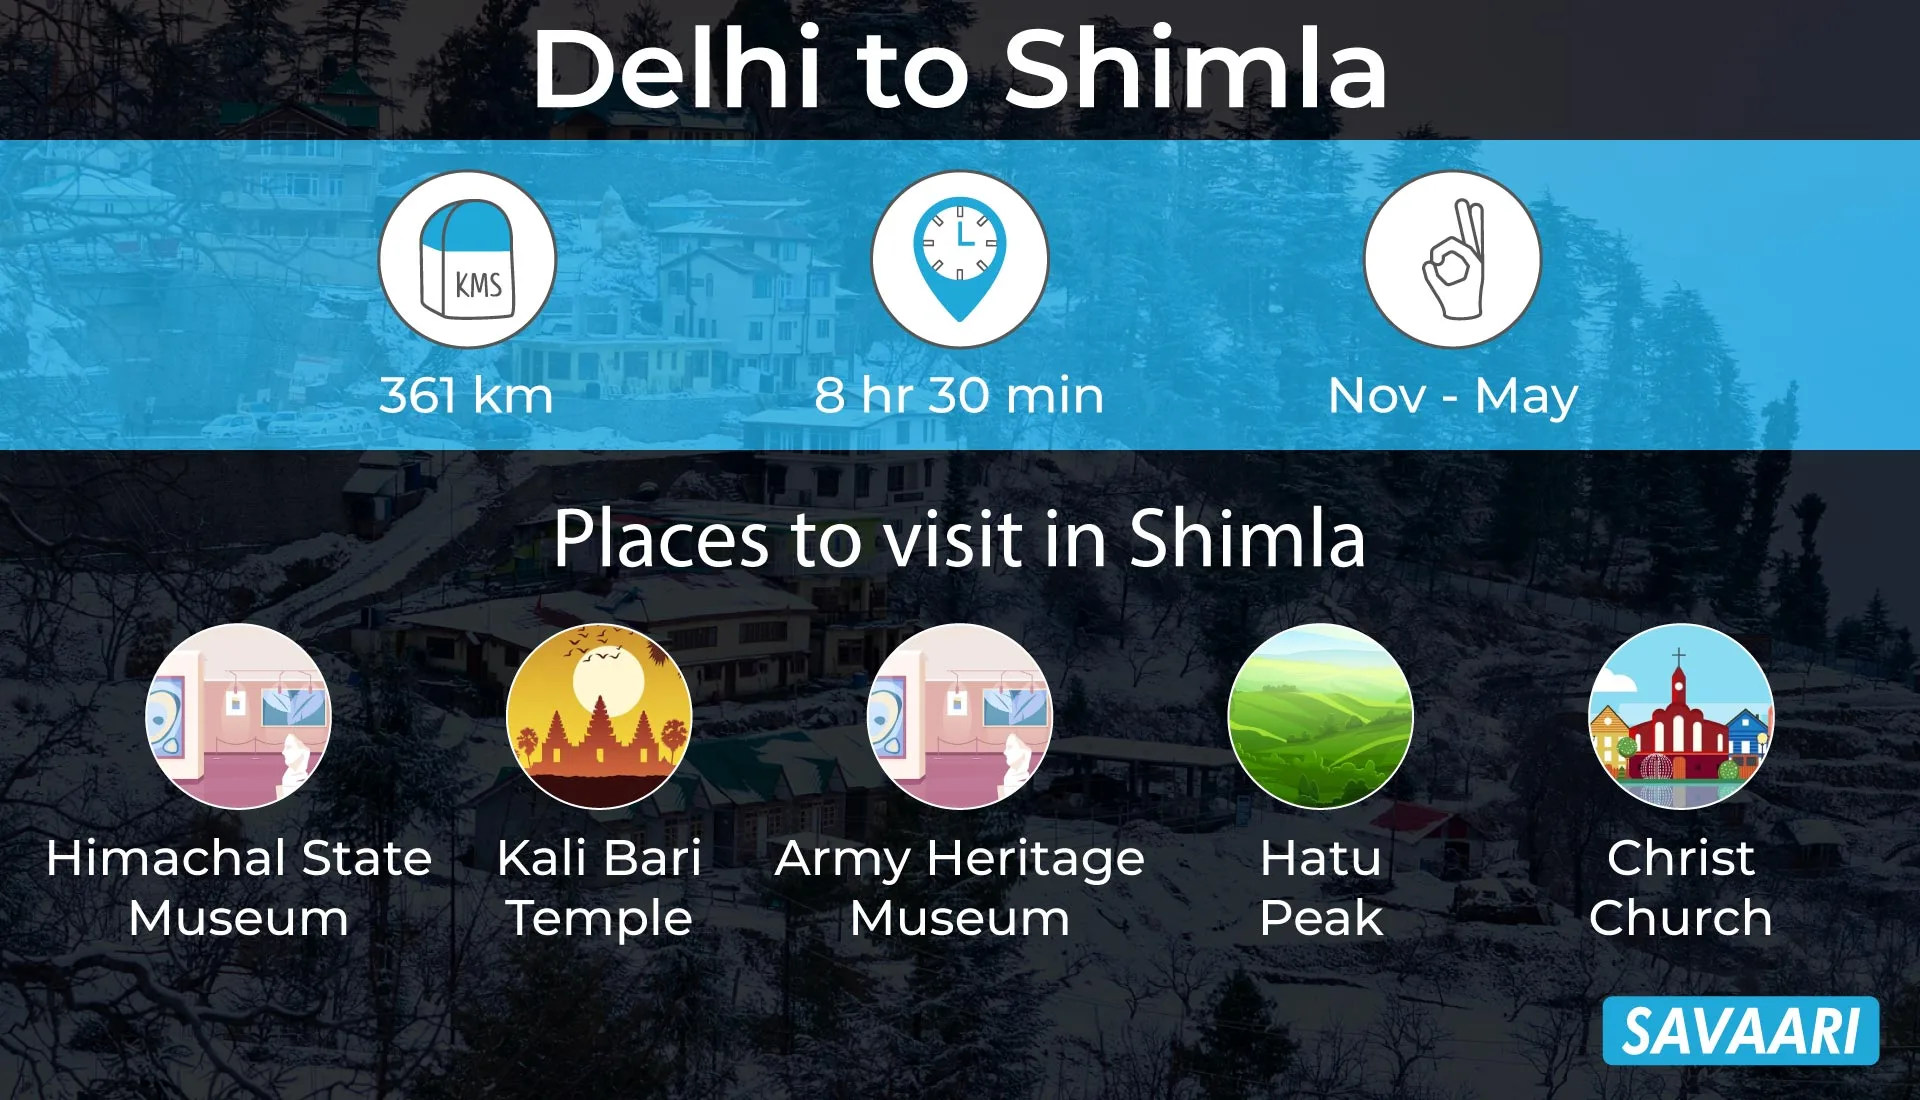 Delhi to Shimla a scenic road trip